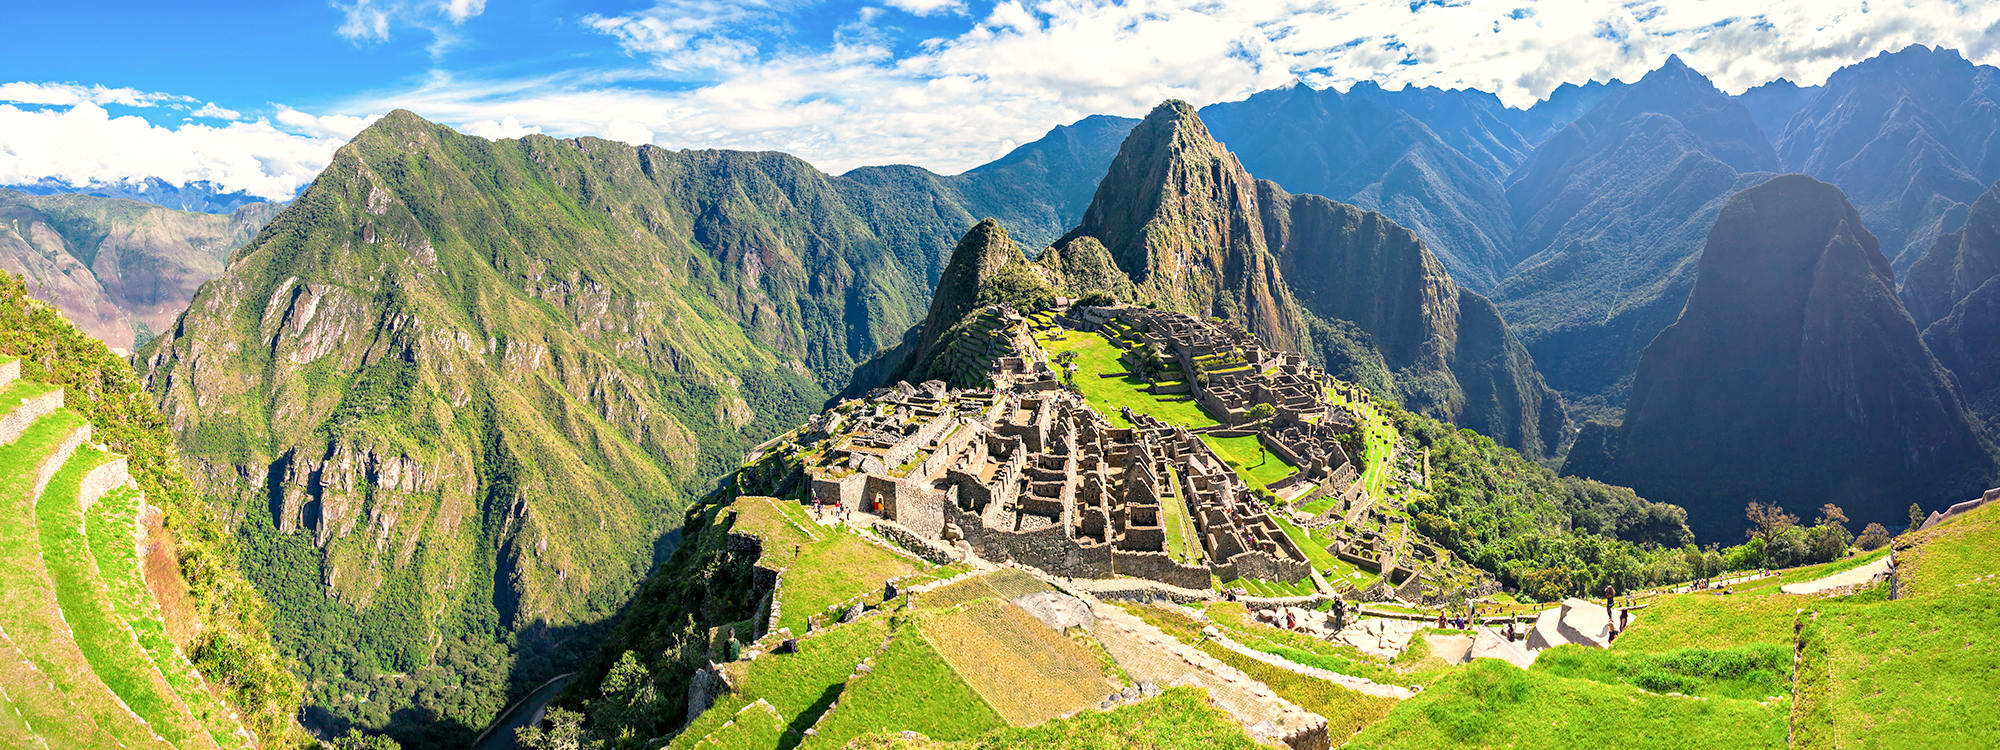 Macchu Picchu - Peru